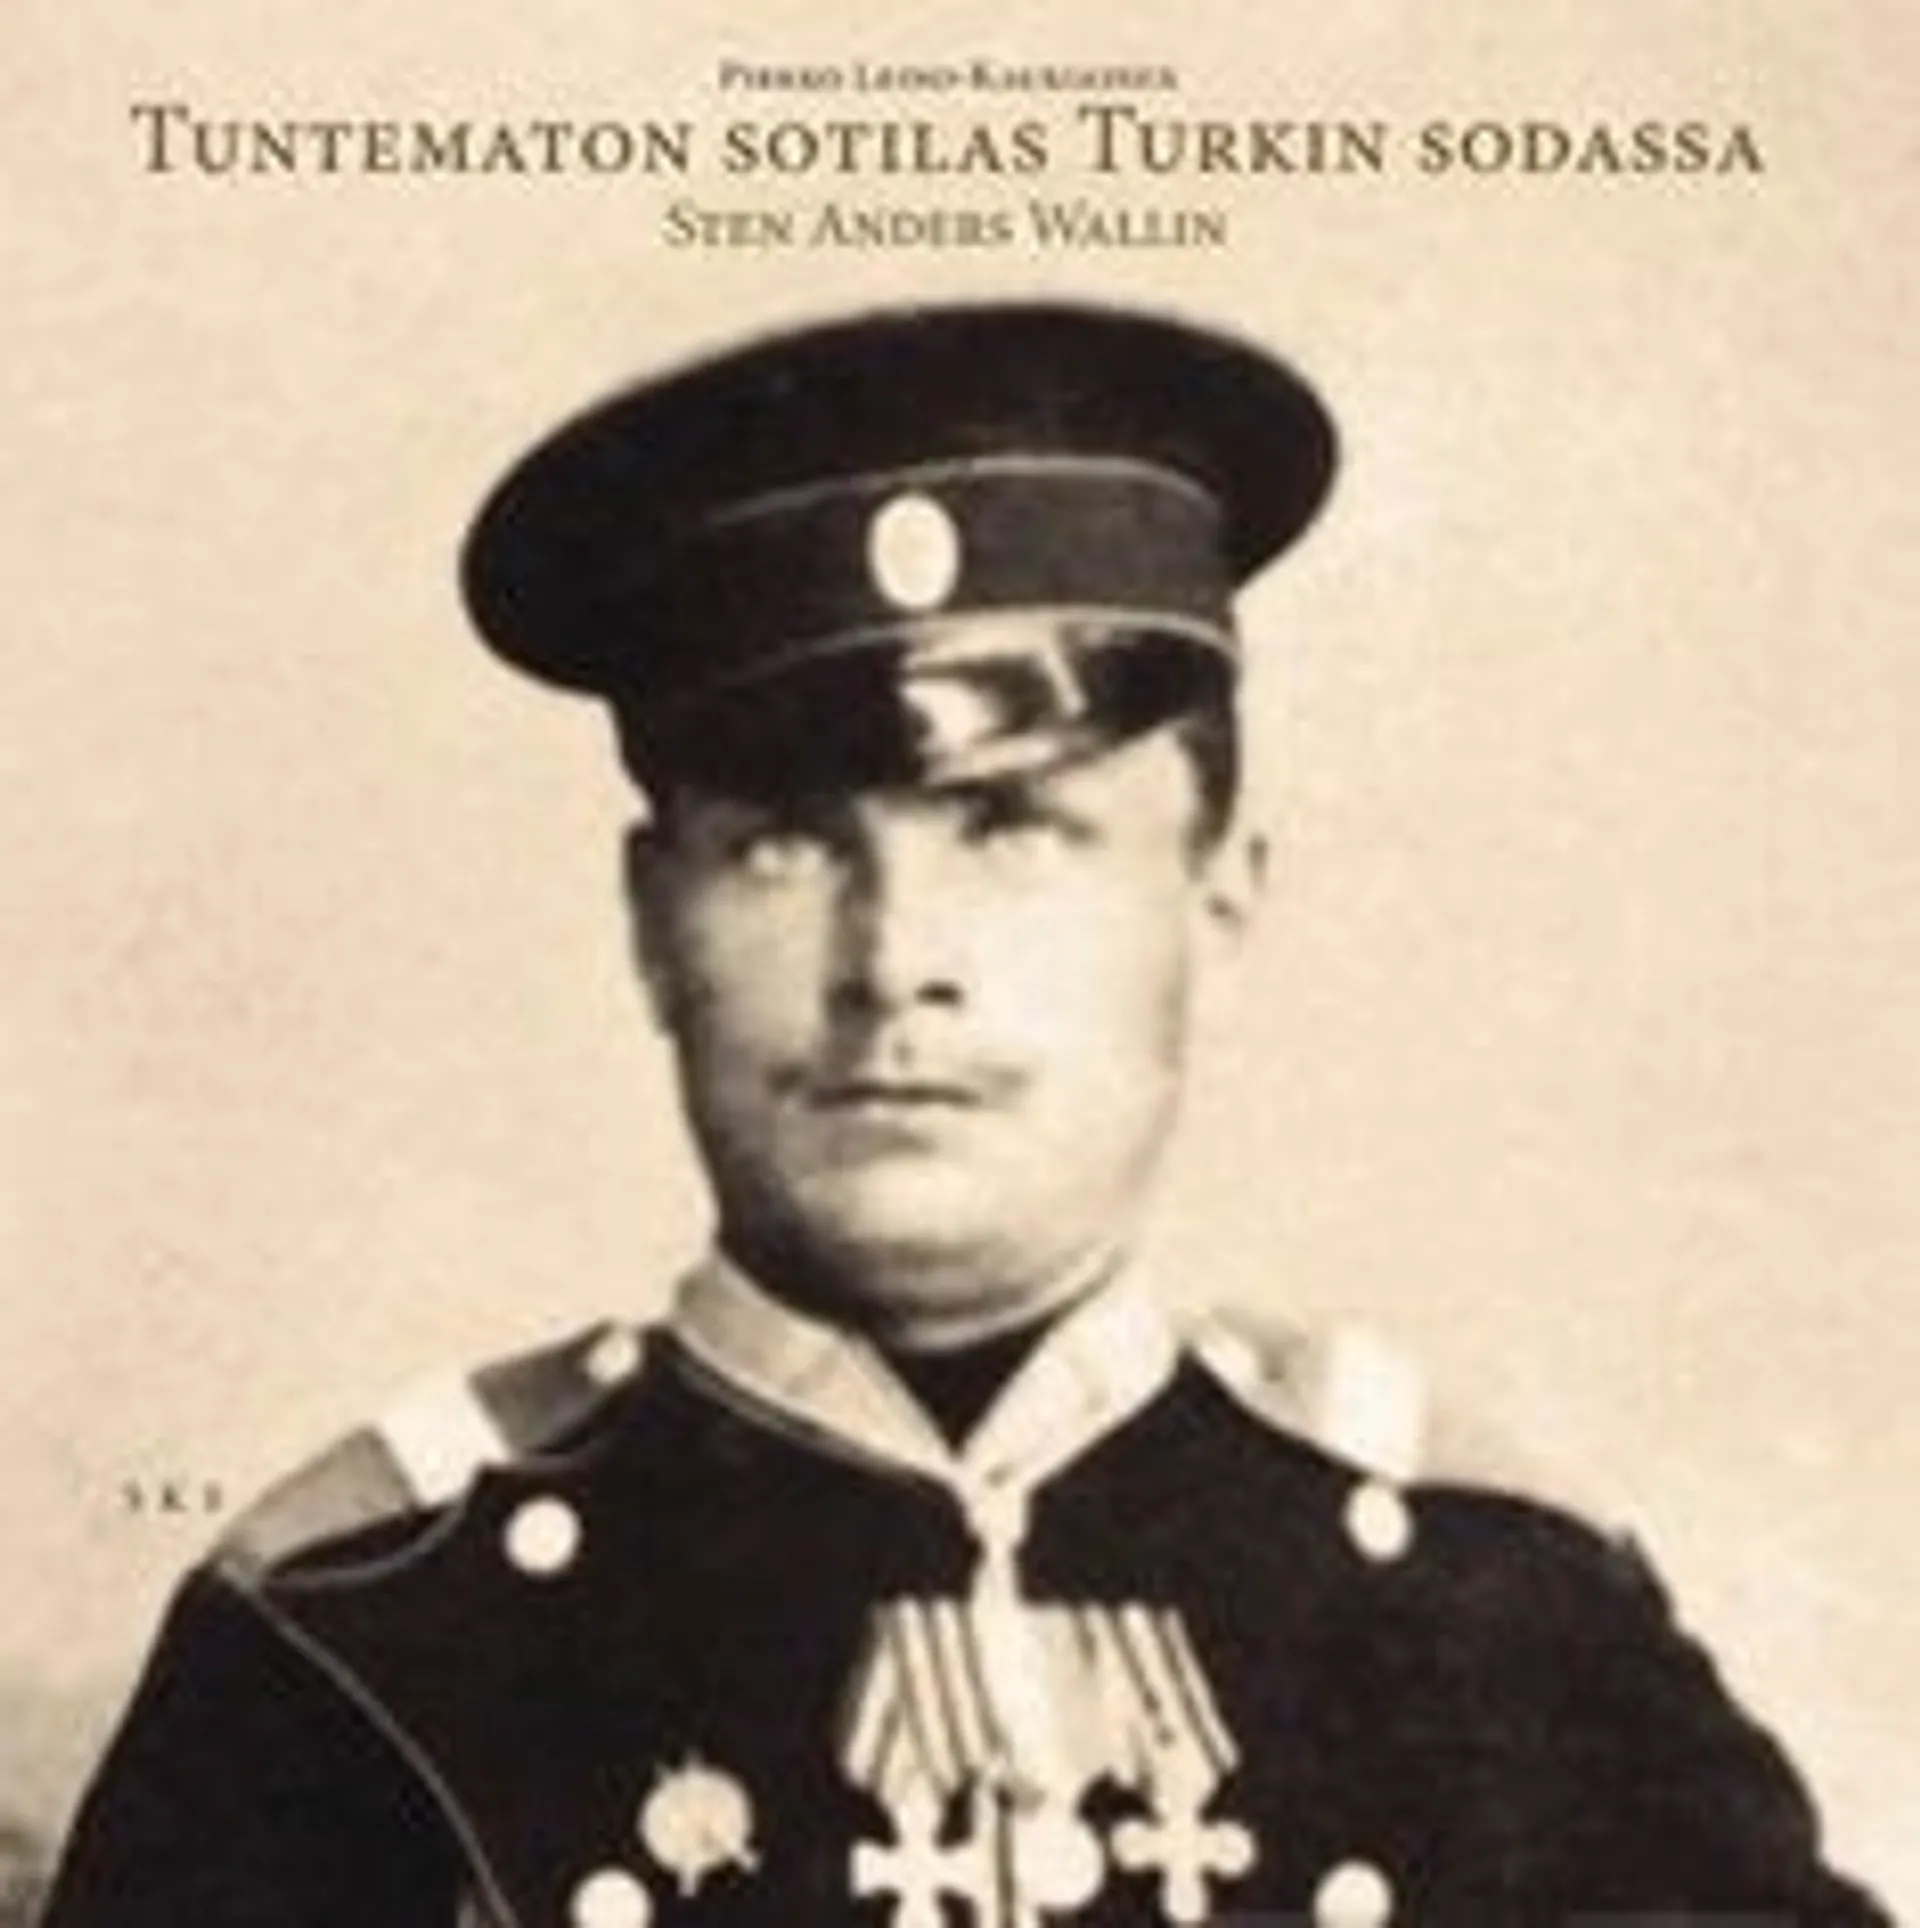 Leino-Kaukiainen, Tuntematon sotilas Turkin sodassa